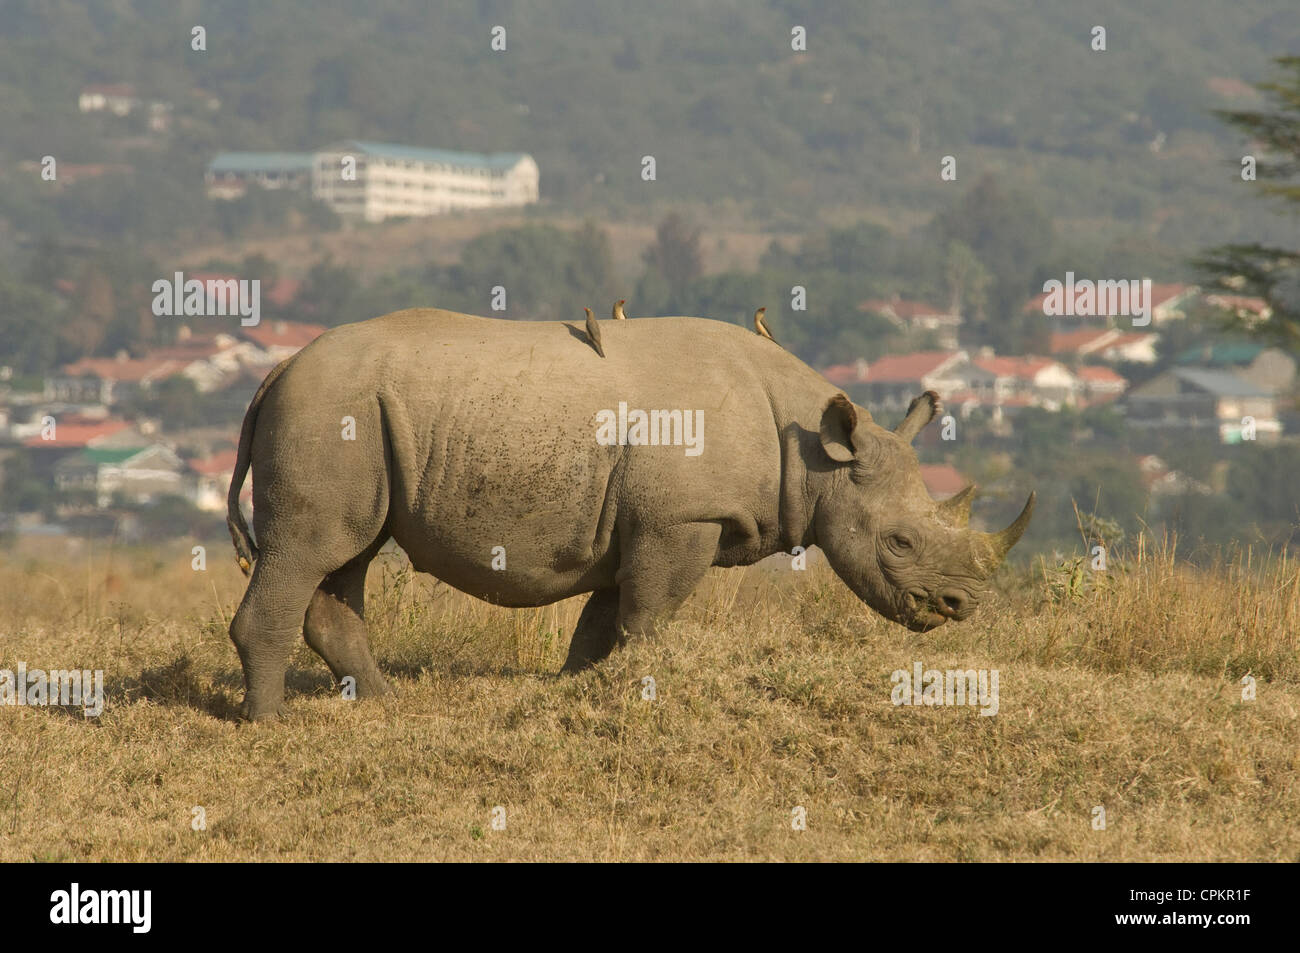 Les rhinocéros noirs et ville de Nakuru en arrière-plan Banque D'Images